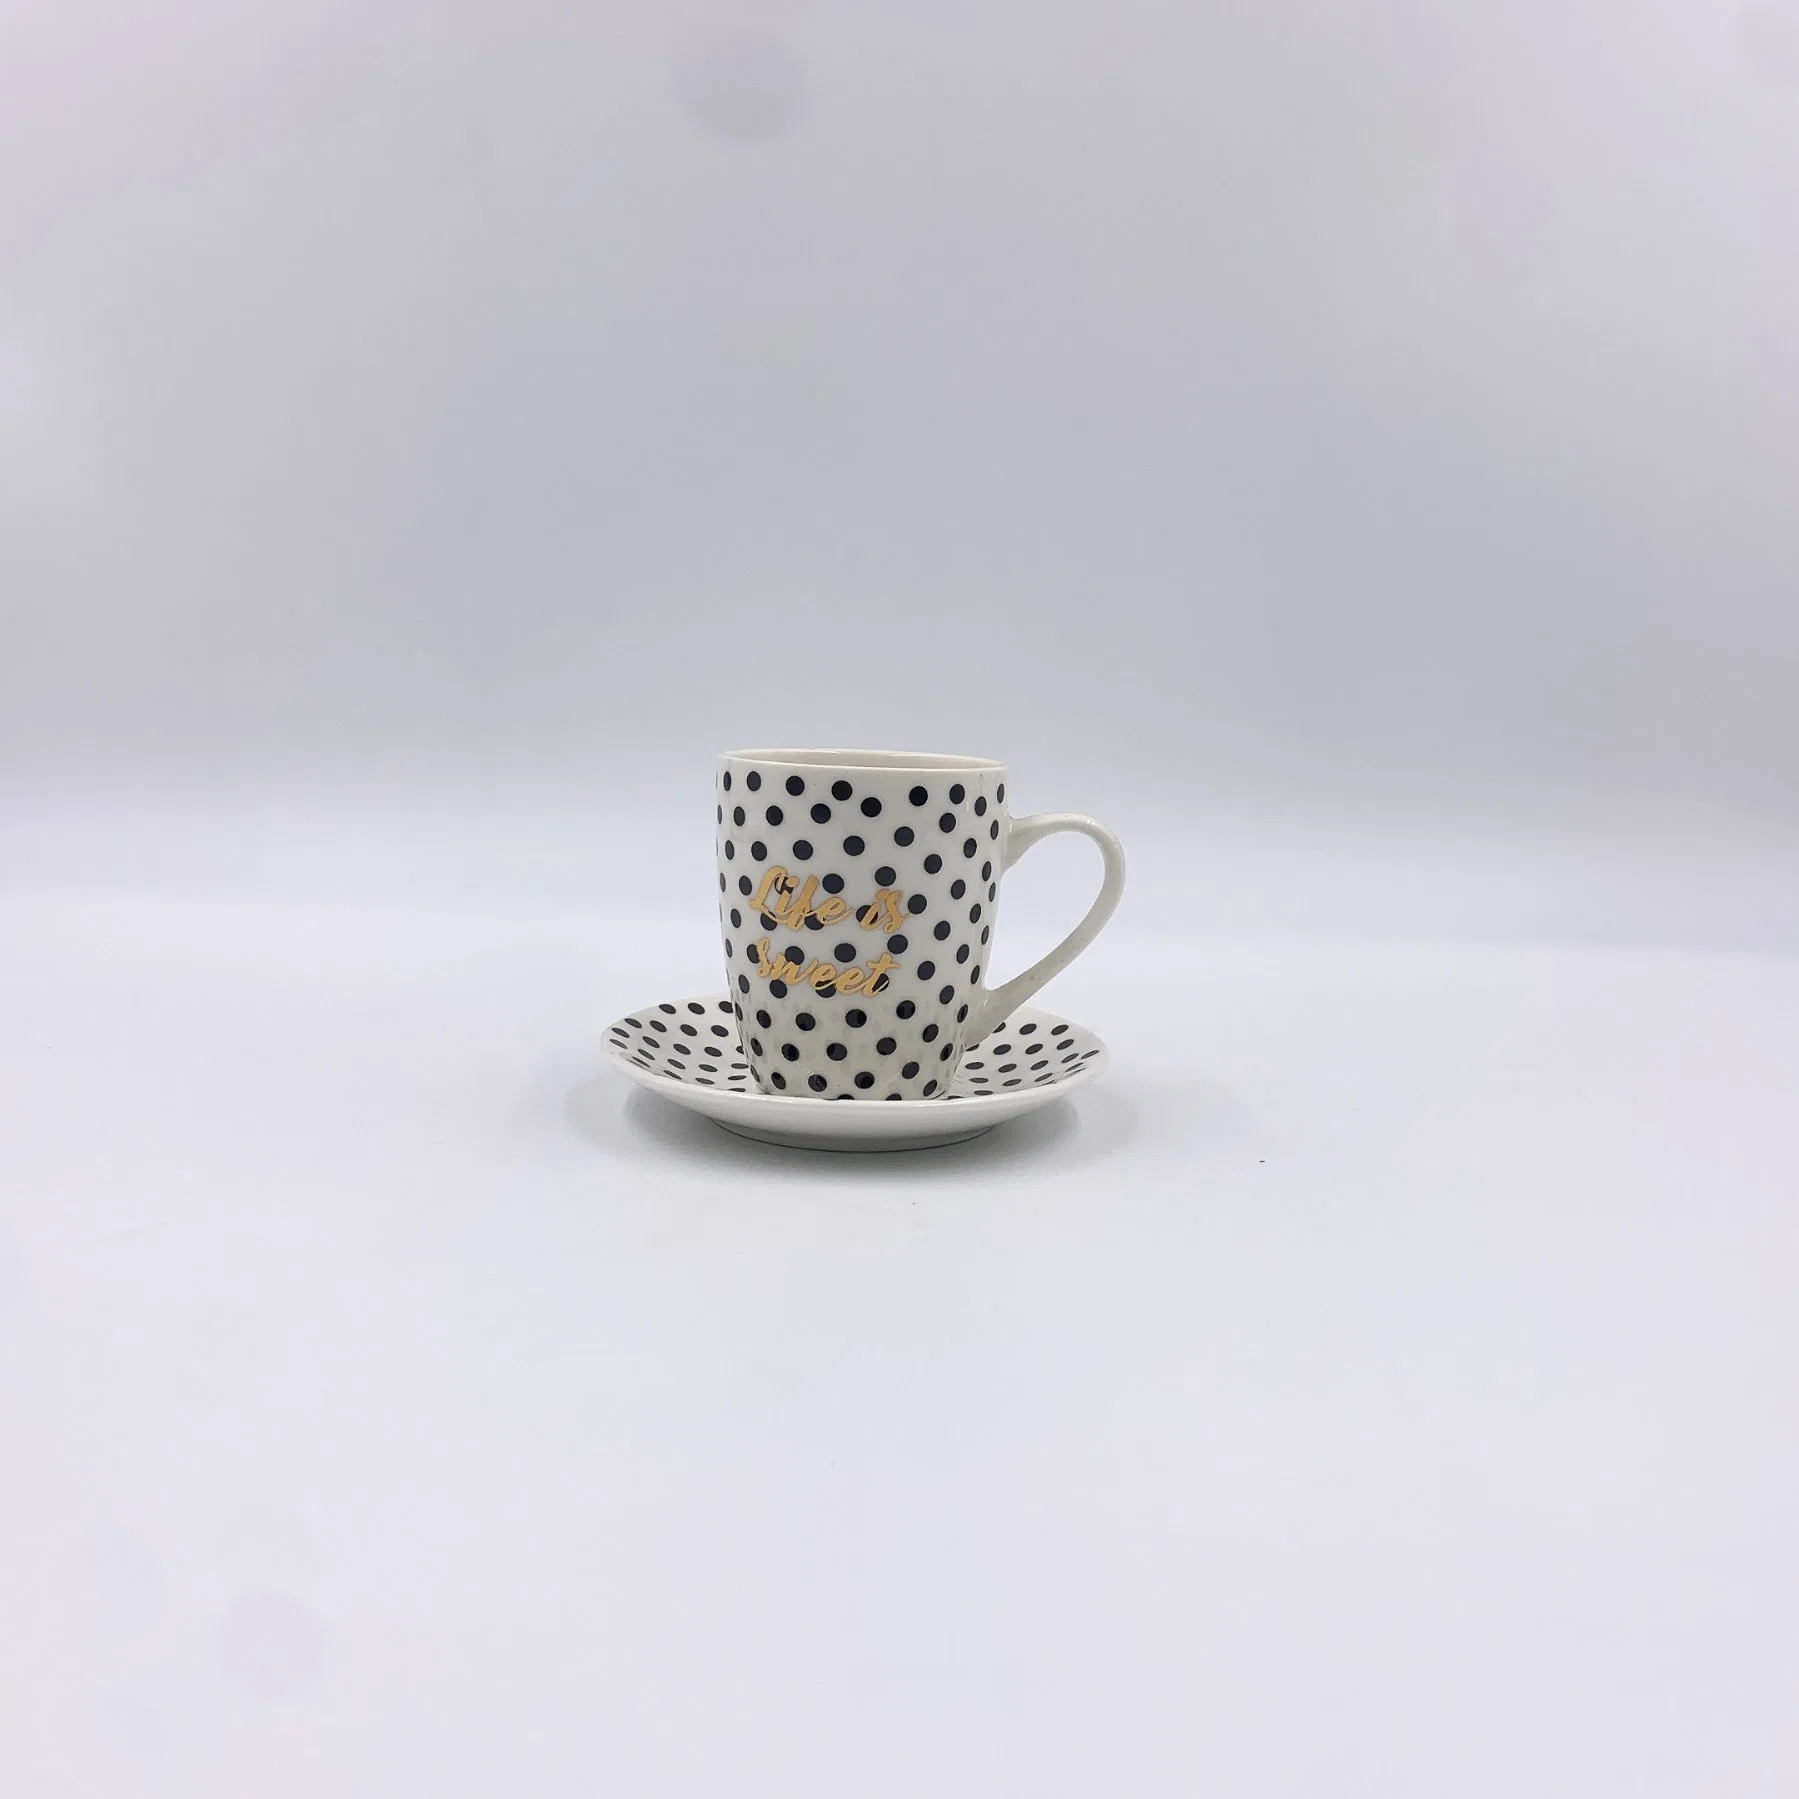 Juego de vajilla de porcelana/China Wholesale "La vida es dulce" palabra de oro Teaset taza de café Utensilios de Cocina decoración personalizada con el logotipo de patrón de colores y diseños